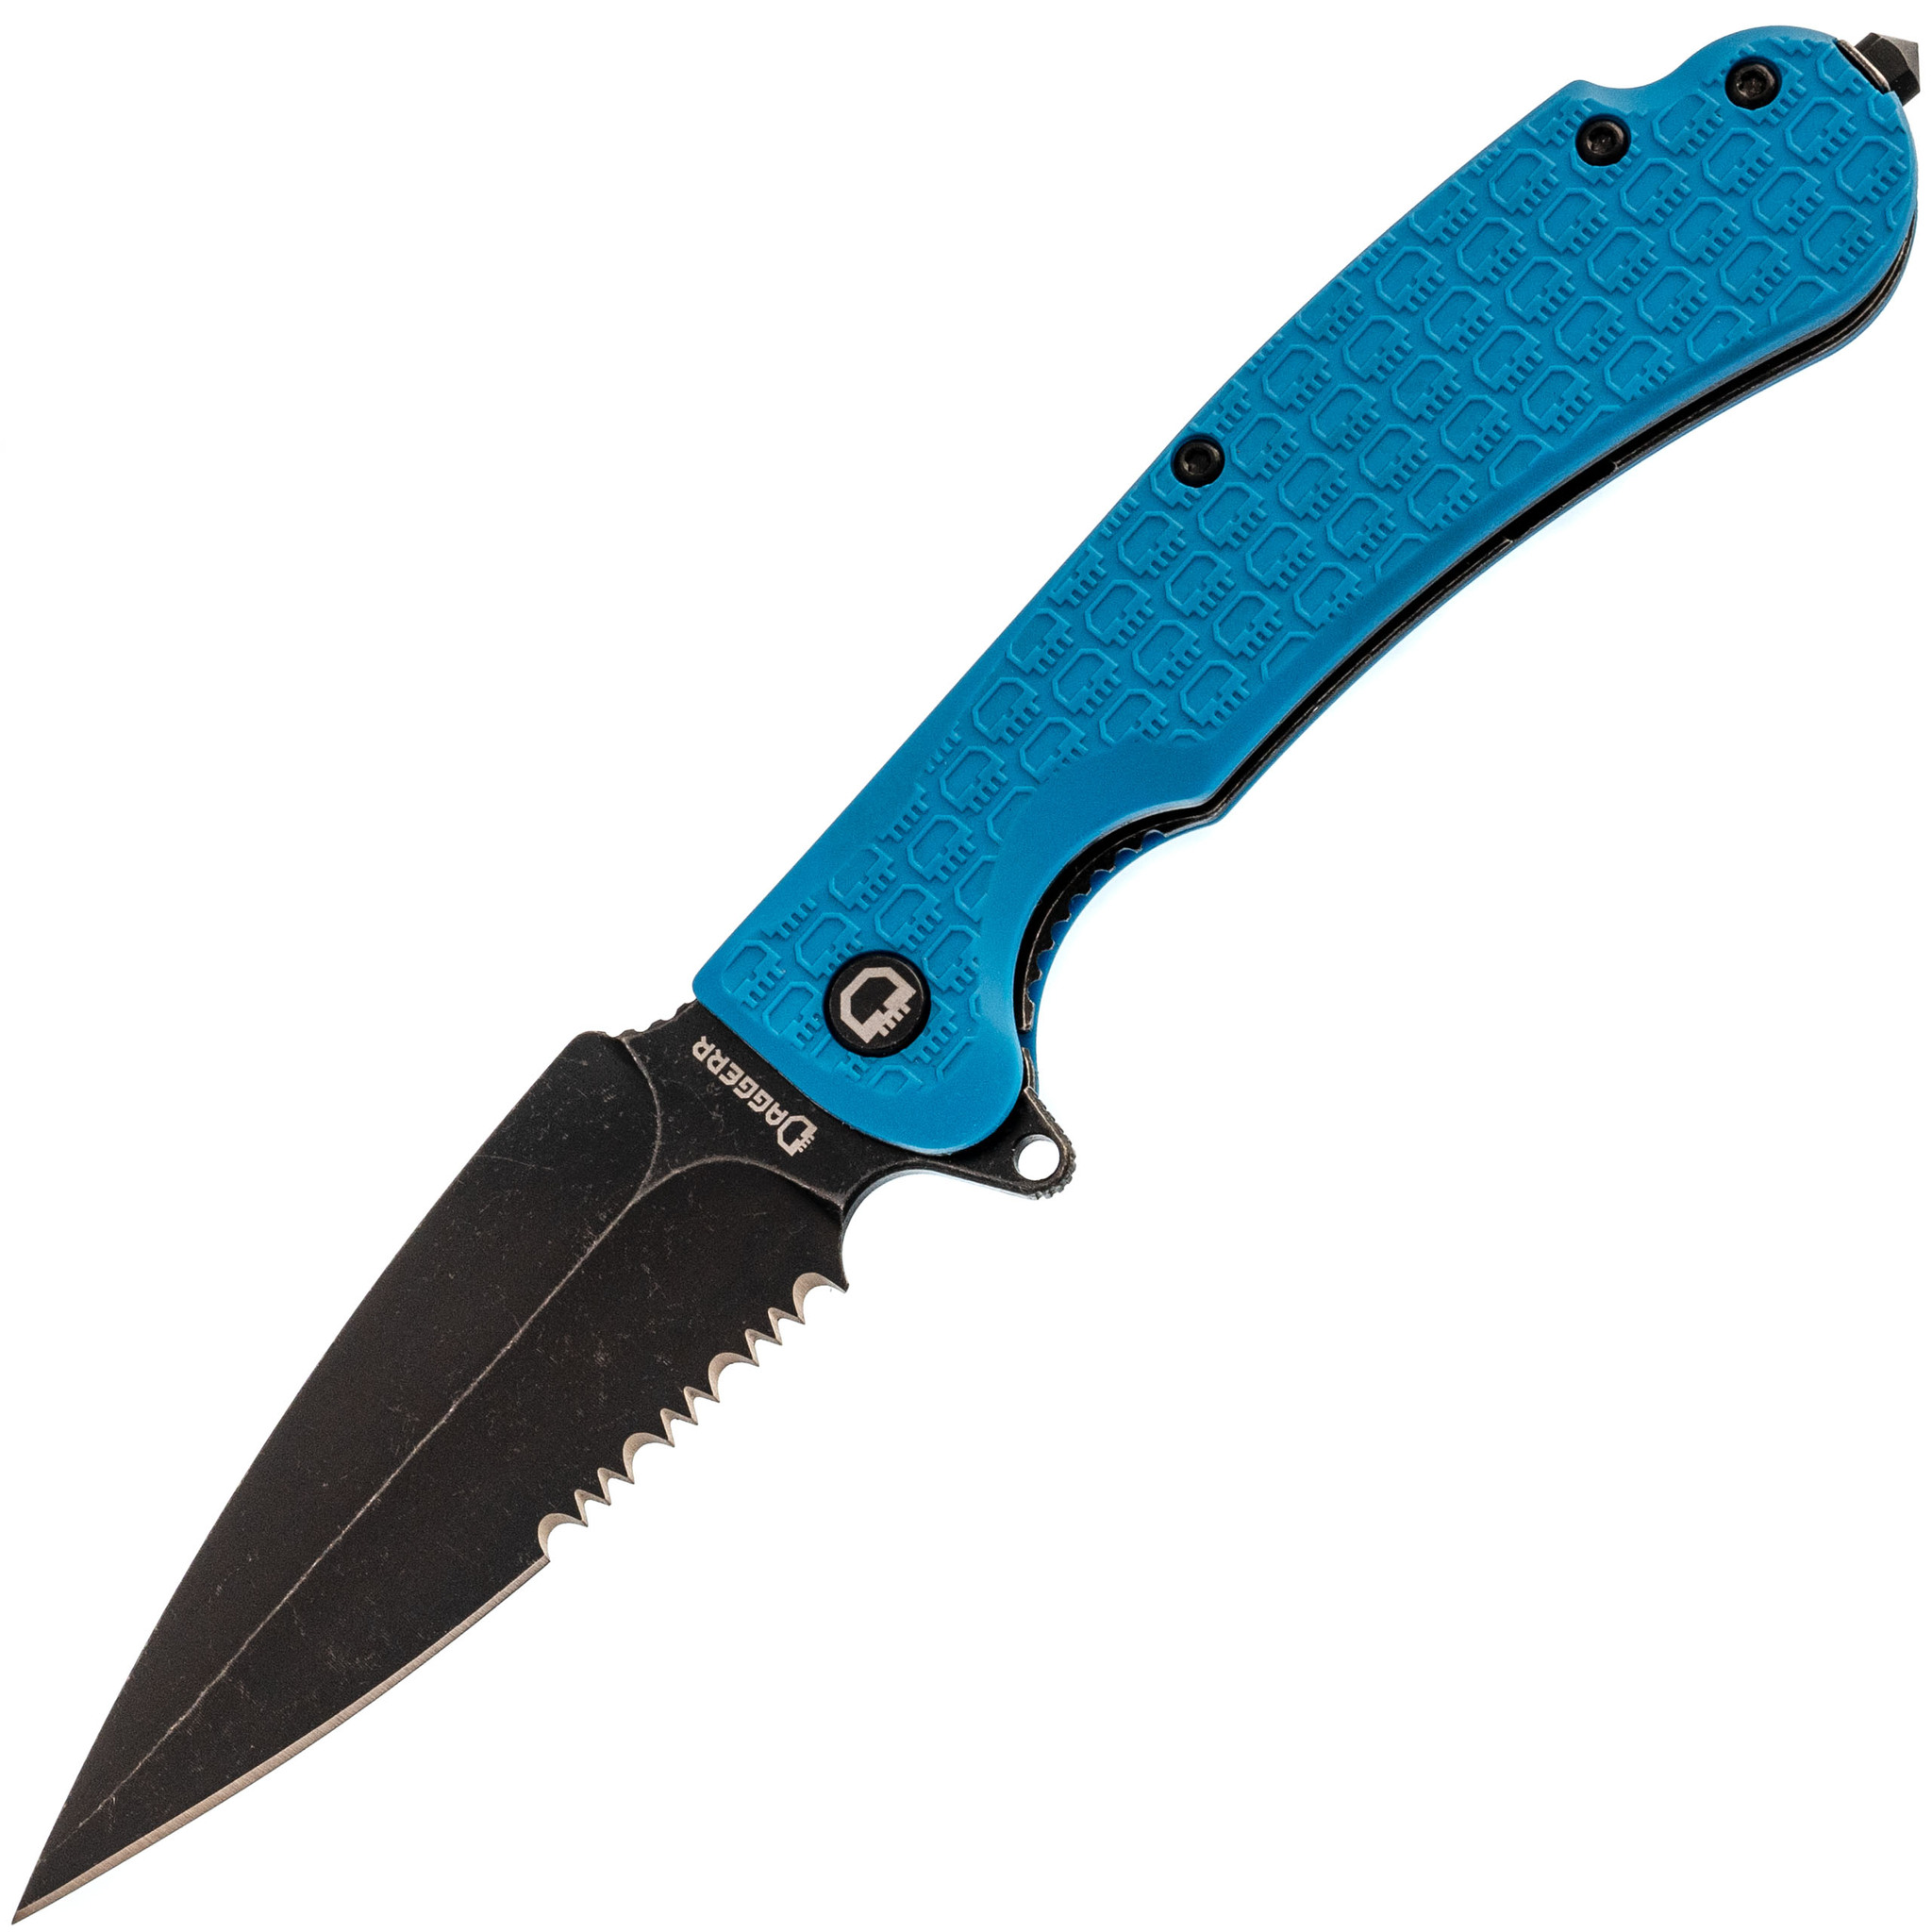 Складной нож Daggerr Urban 2 Blue BW Serrated, сталь 8Cr14MoV, рукоять FRN